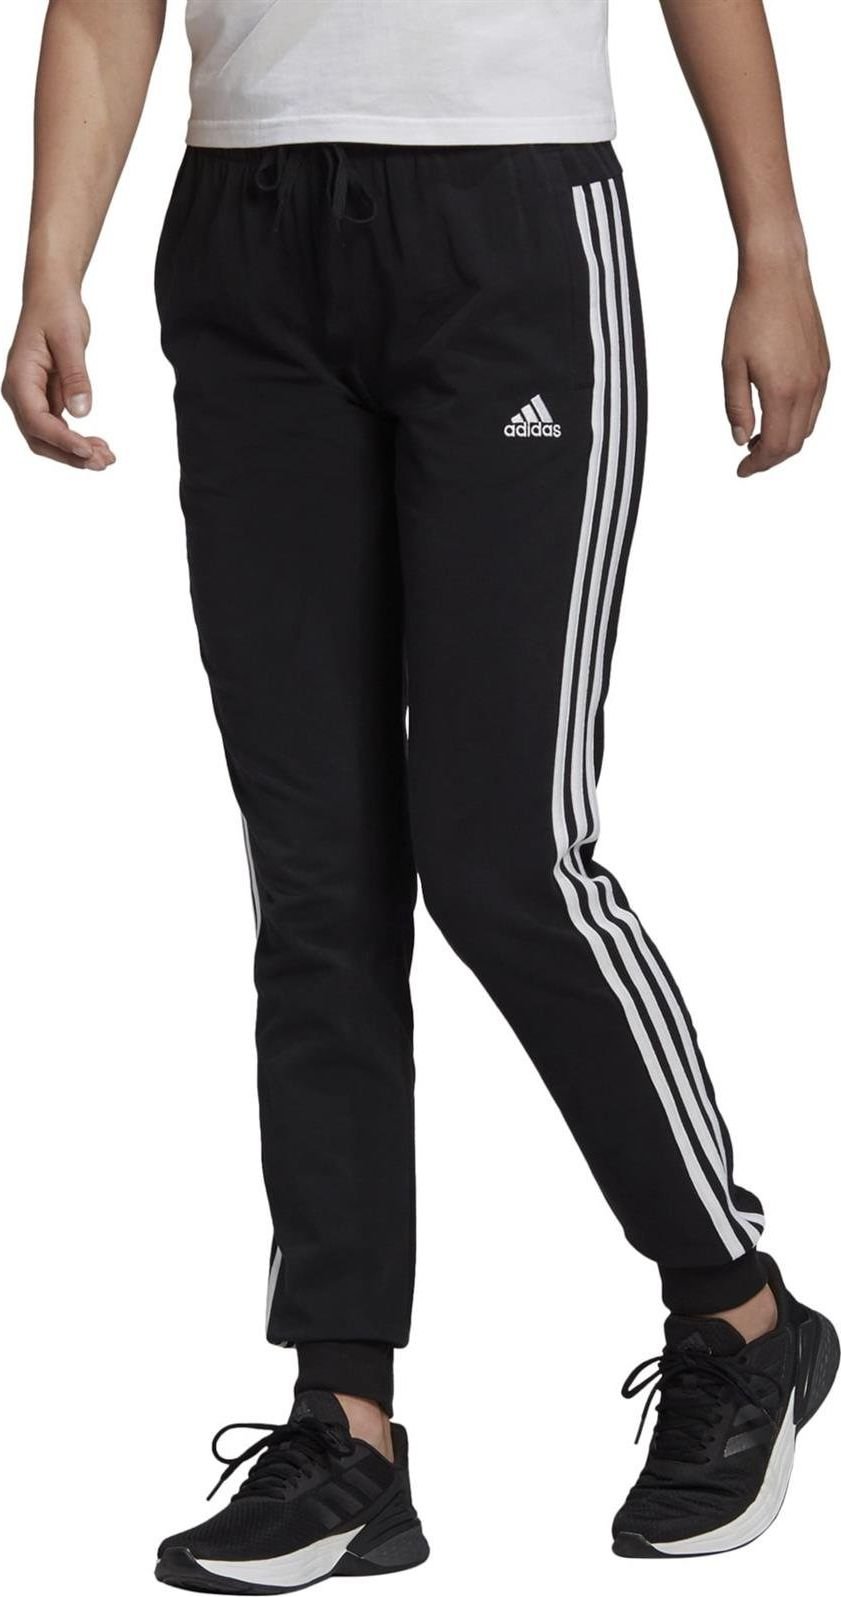 Pantaloni de trening Adidas Cero Essential pentru femei, negri, marimea L (GM5542)